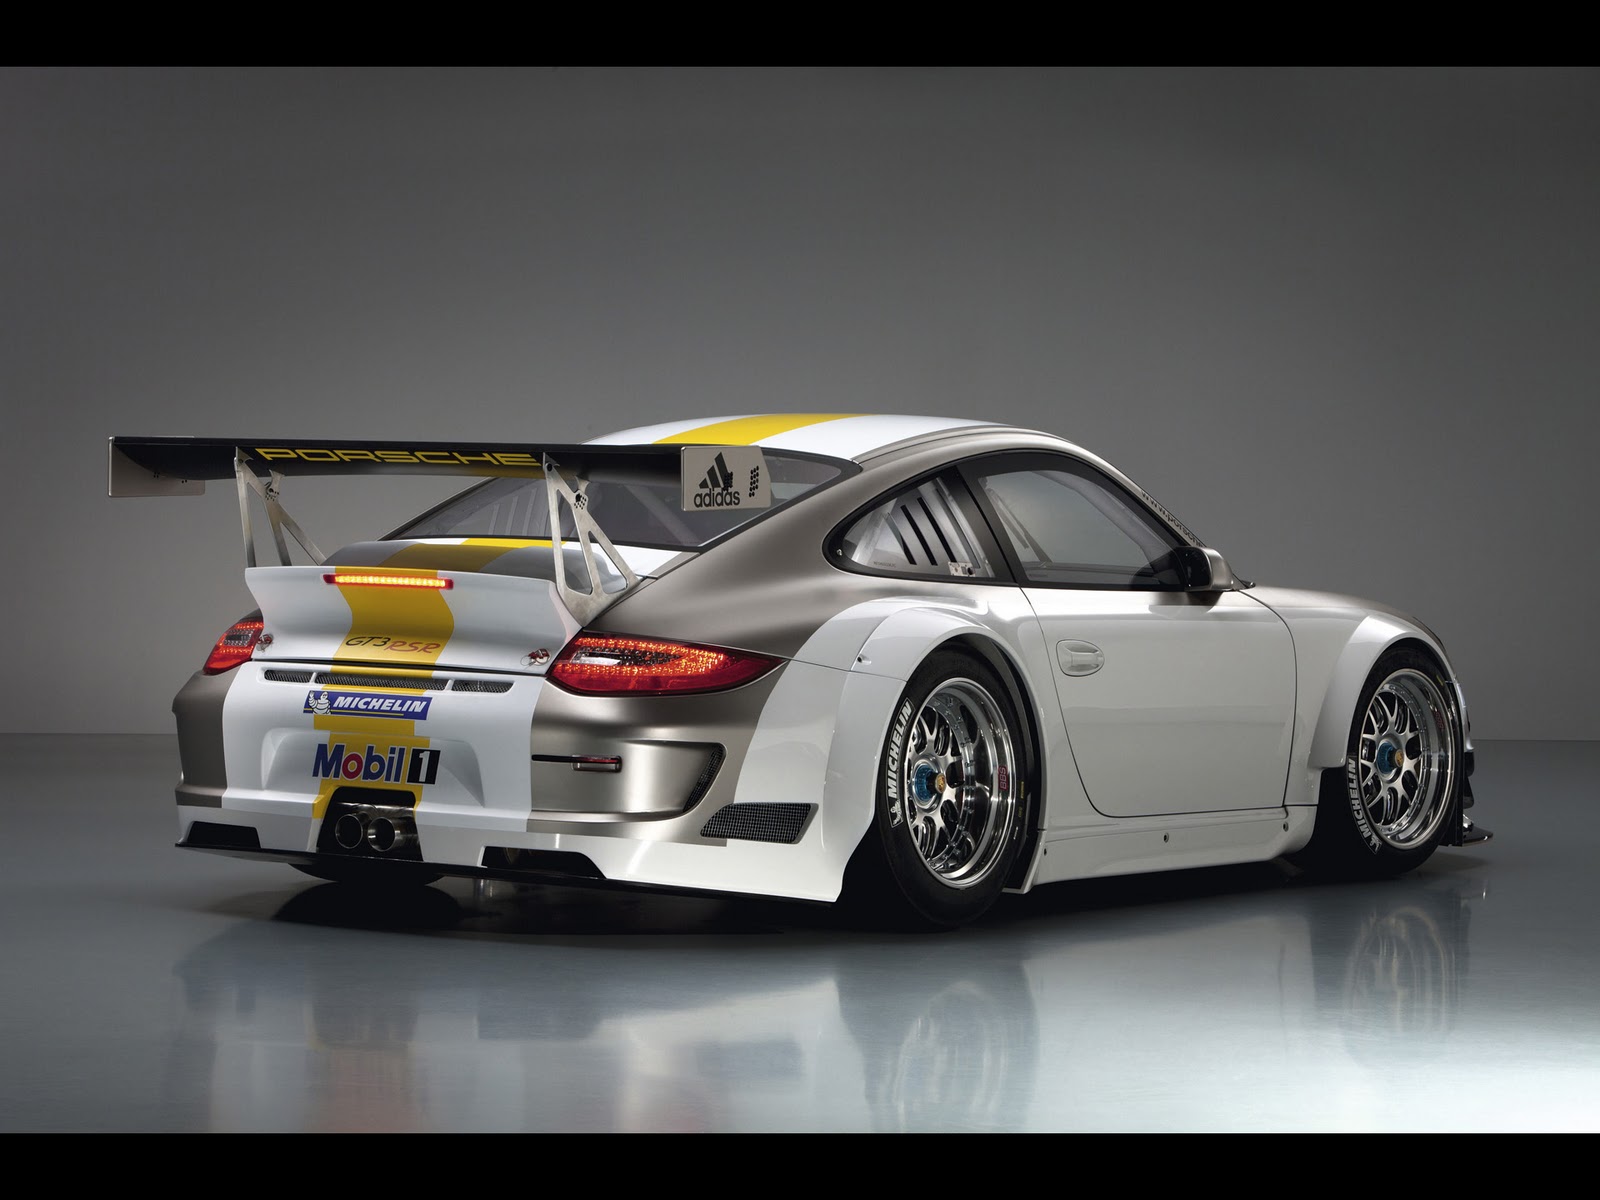 Cars Hd Wallpapers: 2011 Porsche 911 GT3 RSR